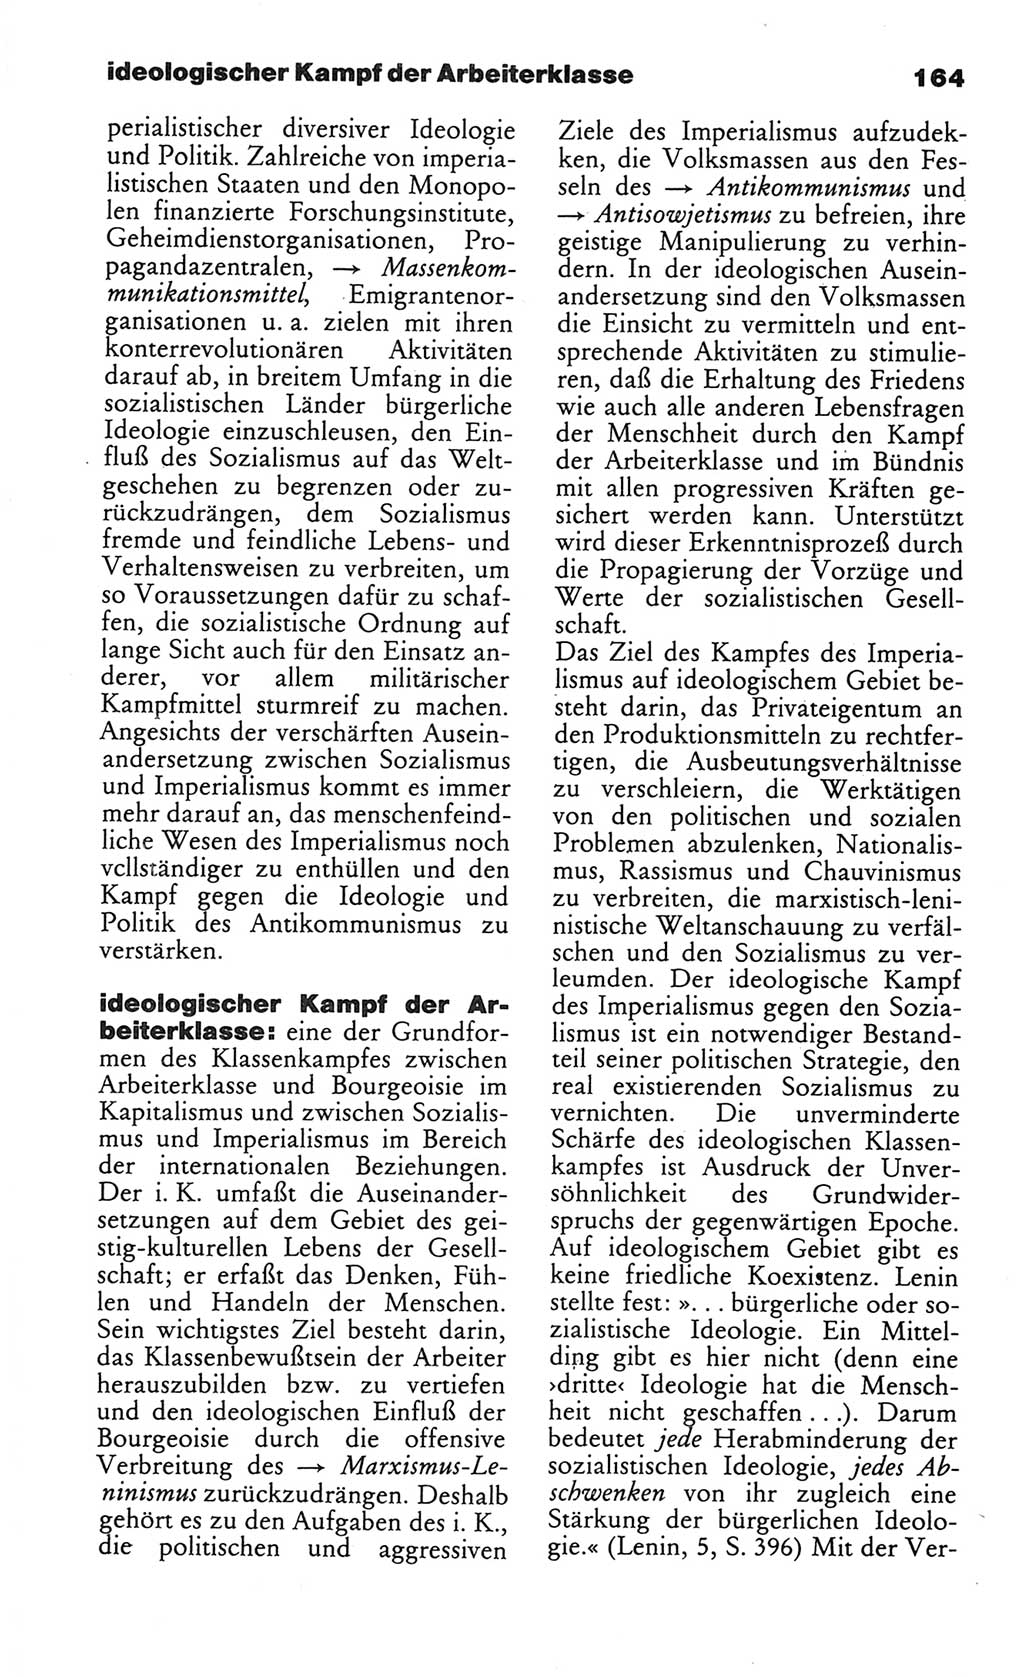 Wörterbuch des wissenschaftlichen Kommunismus [Deutsche Demokratische Republik (DDR)] 1984, Seite 164 (Wb. wiss. Komm. DDR 1984, S. 164)